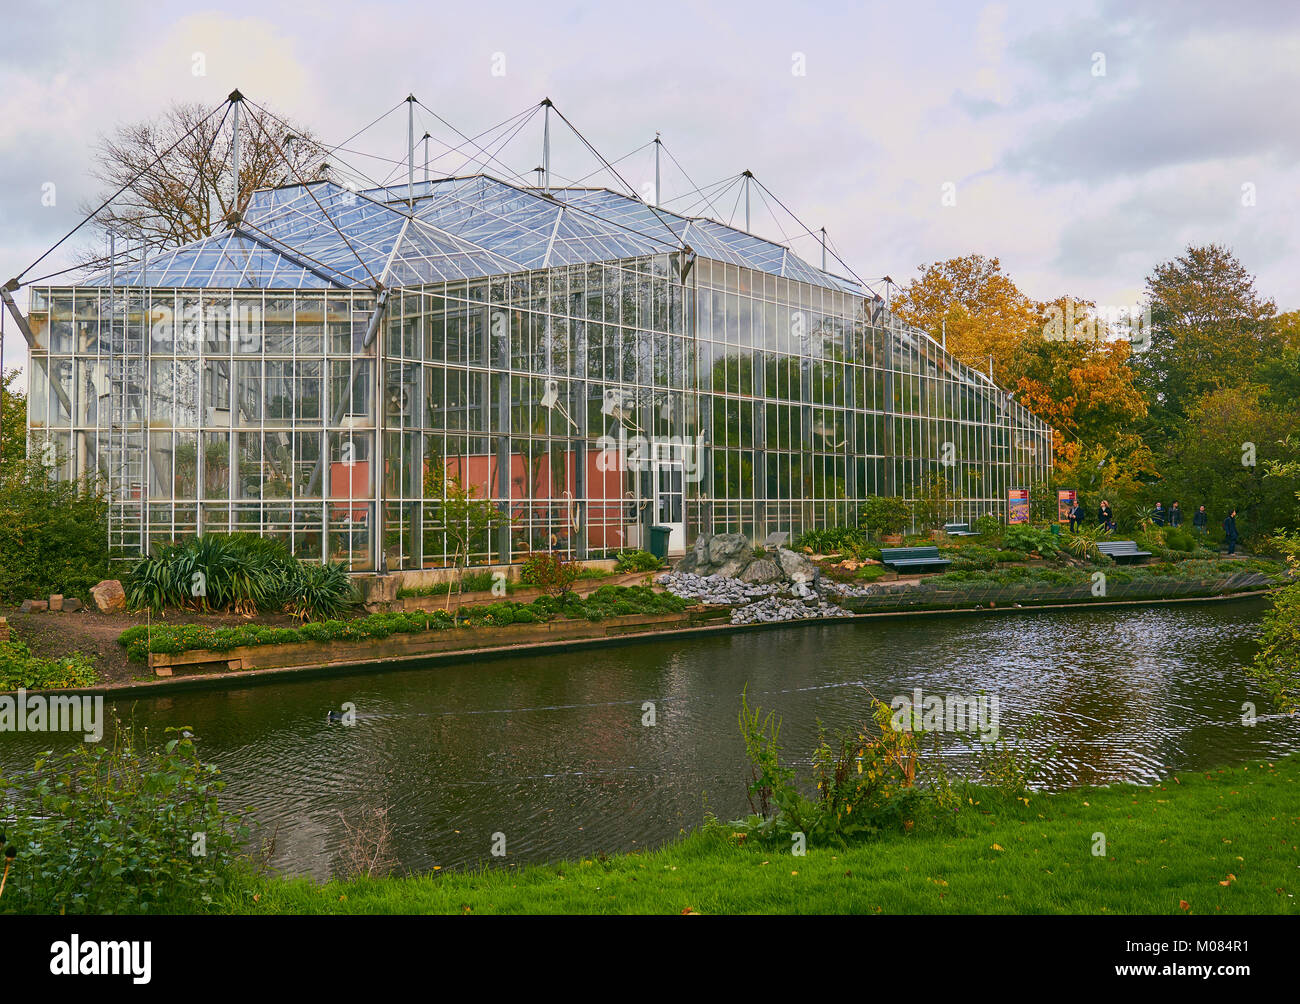 Hortus Botanicus botanischer Garten, Plantage, Amsterdam, Niederlande. Im Jahre 1638 gegründet als aherb Garten für Ärzte und Apotheker zu dienen. Stockfoto